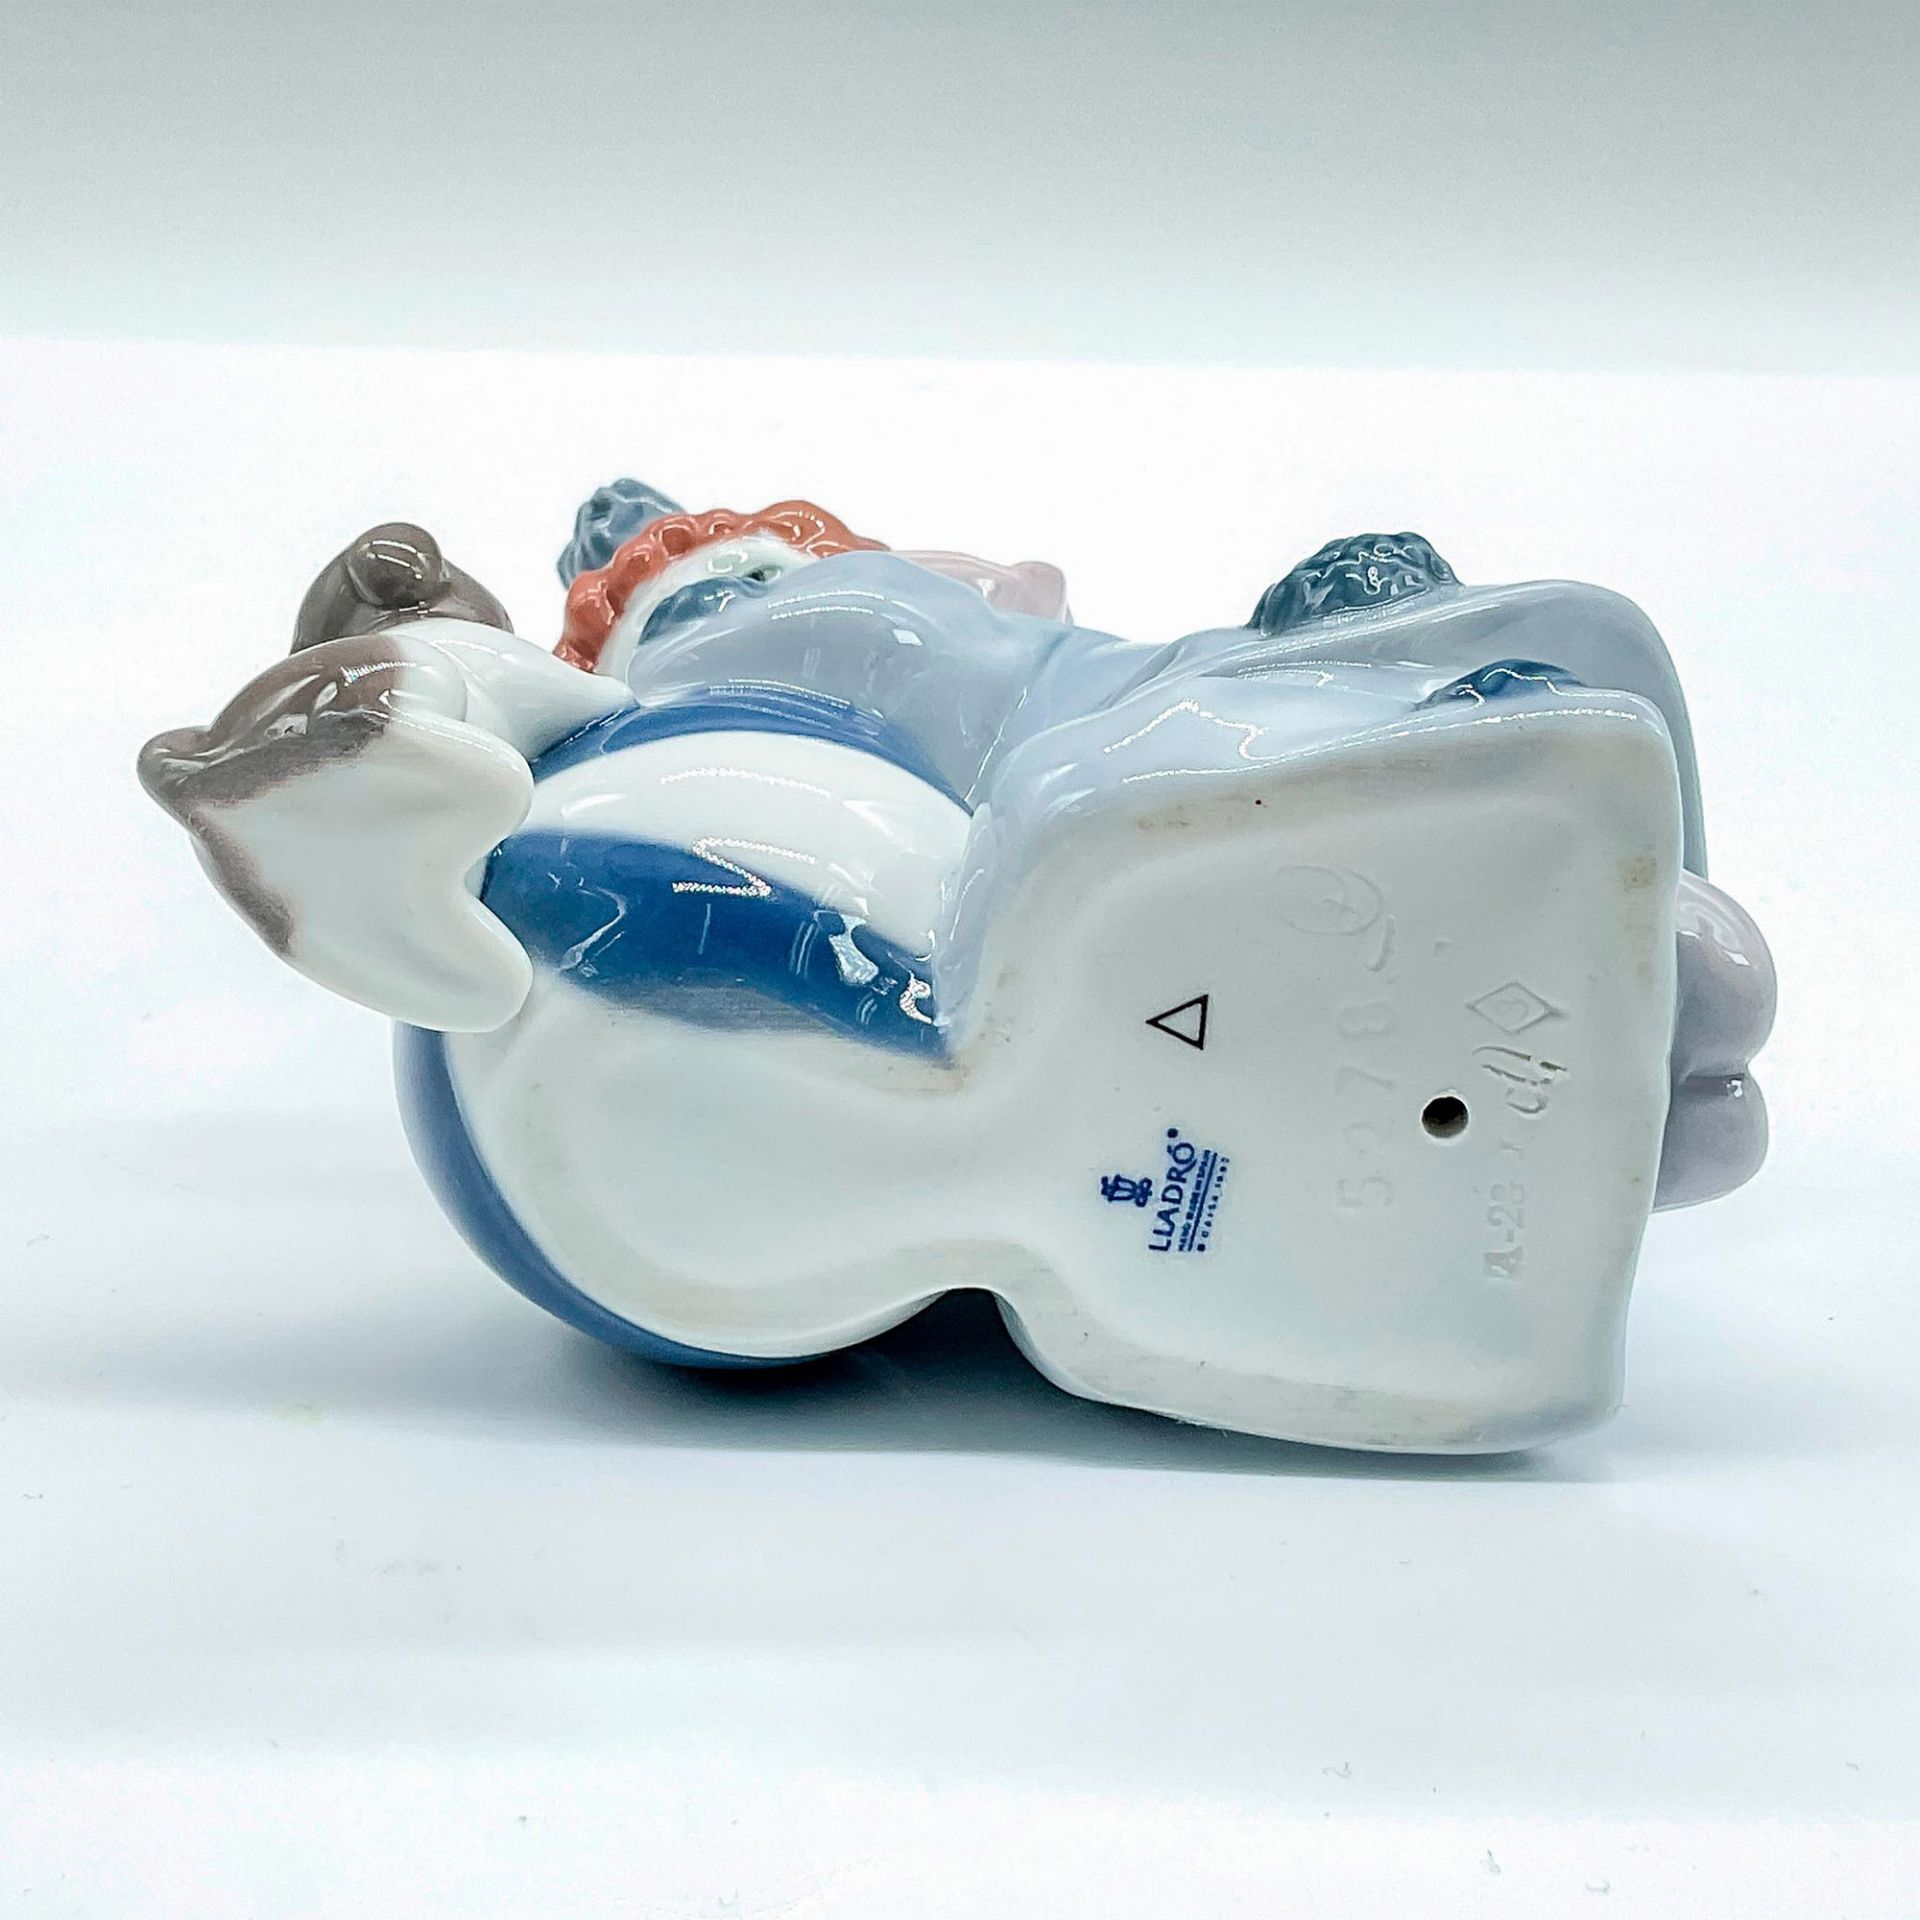 Pierrot with Puppy and Ball 1005278 - Lladro Porcelain Figurine - Bild 3 aus 3